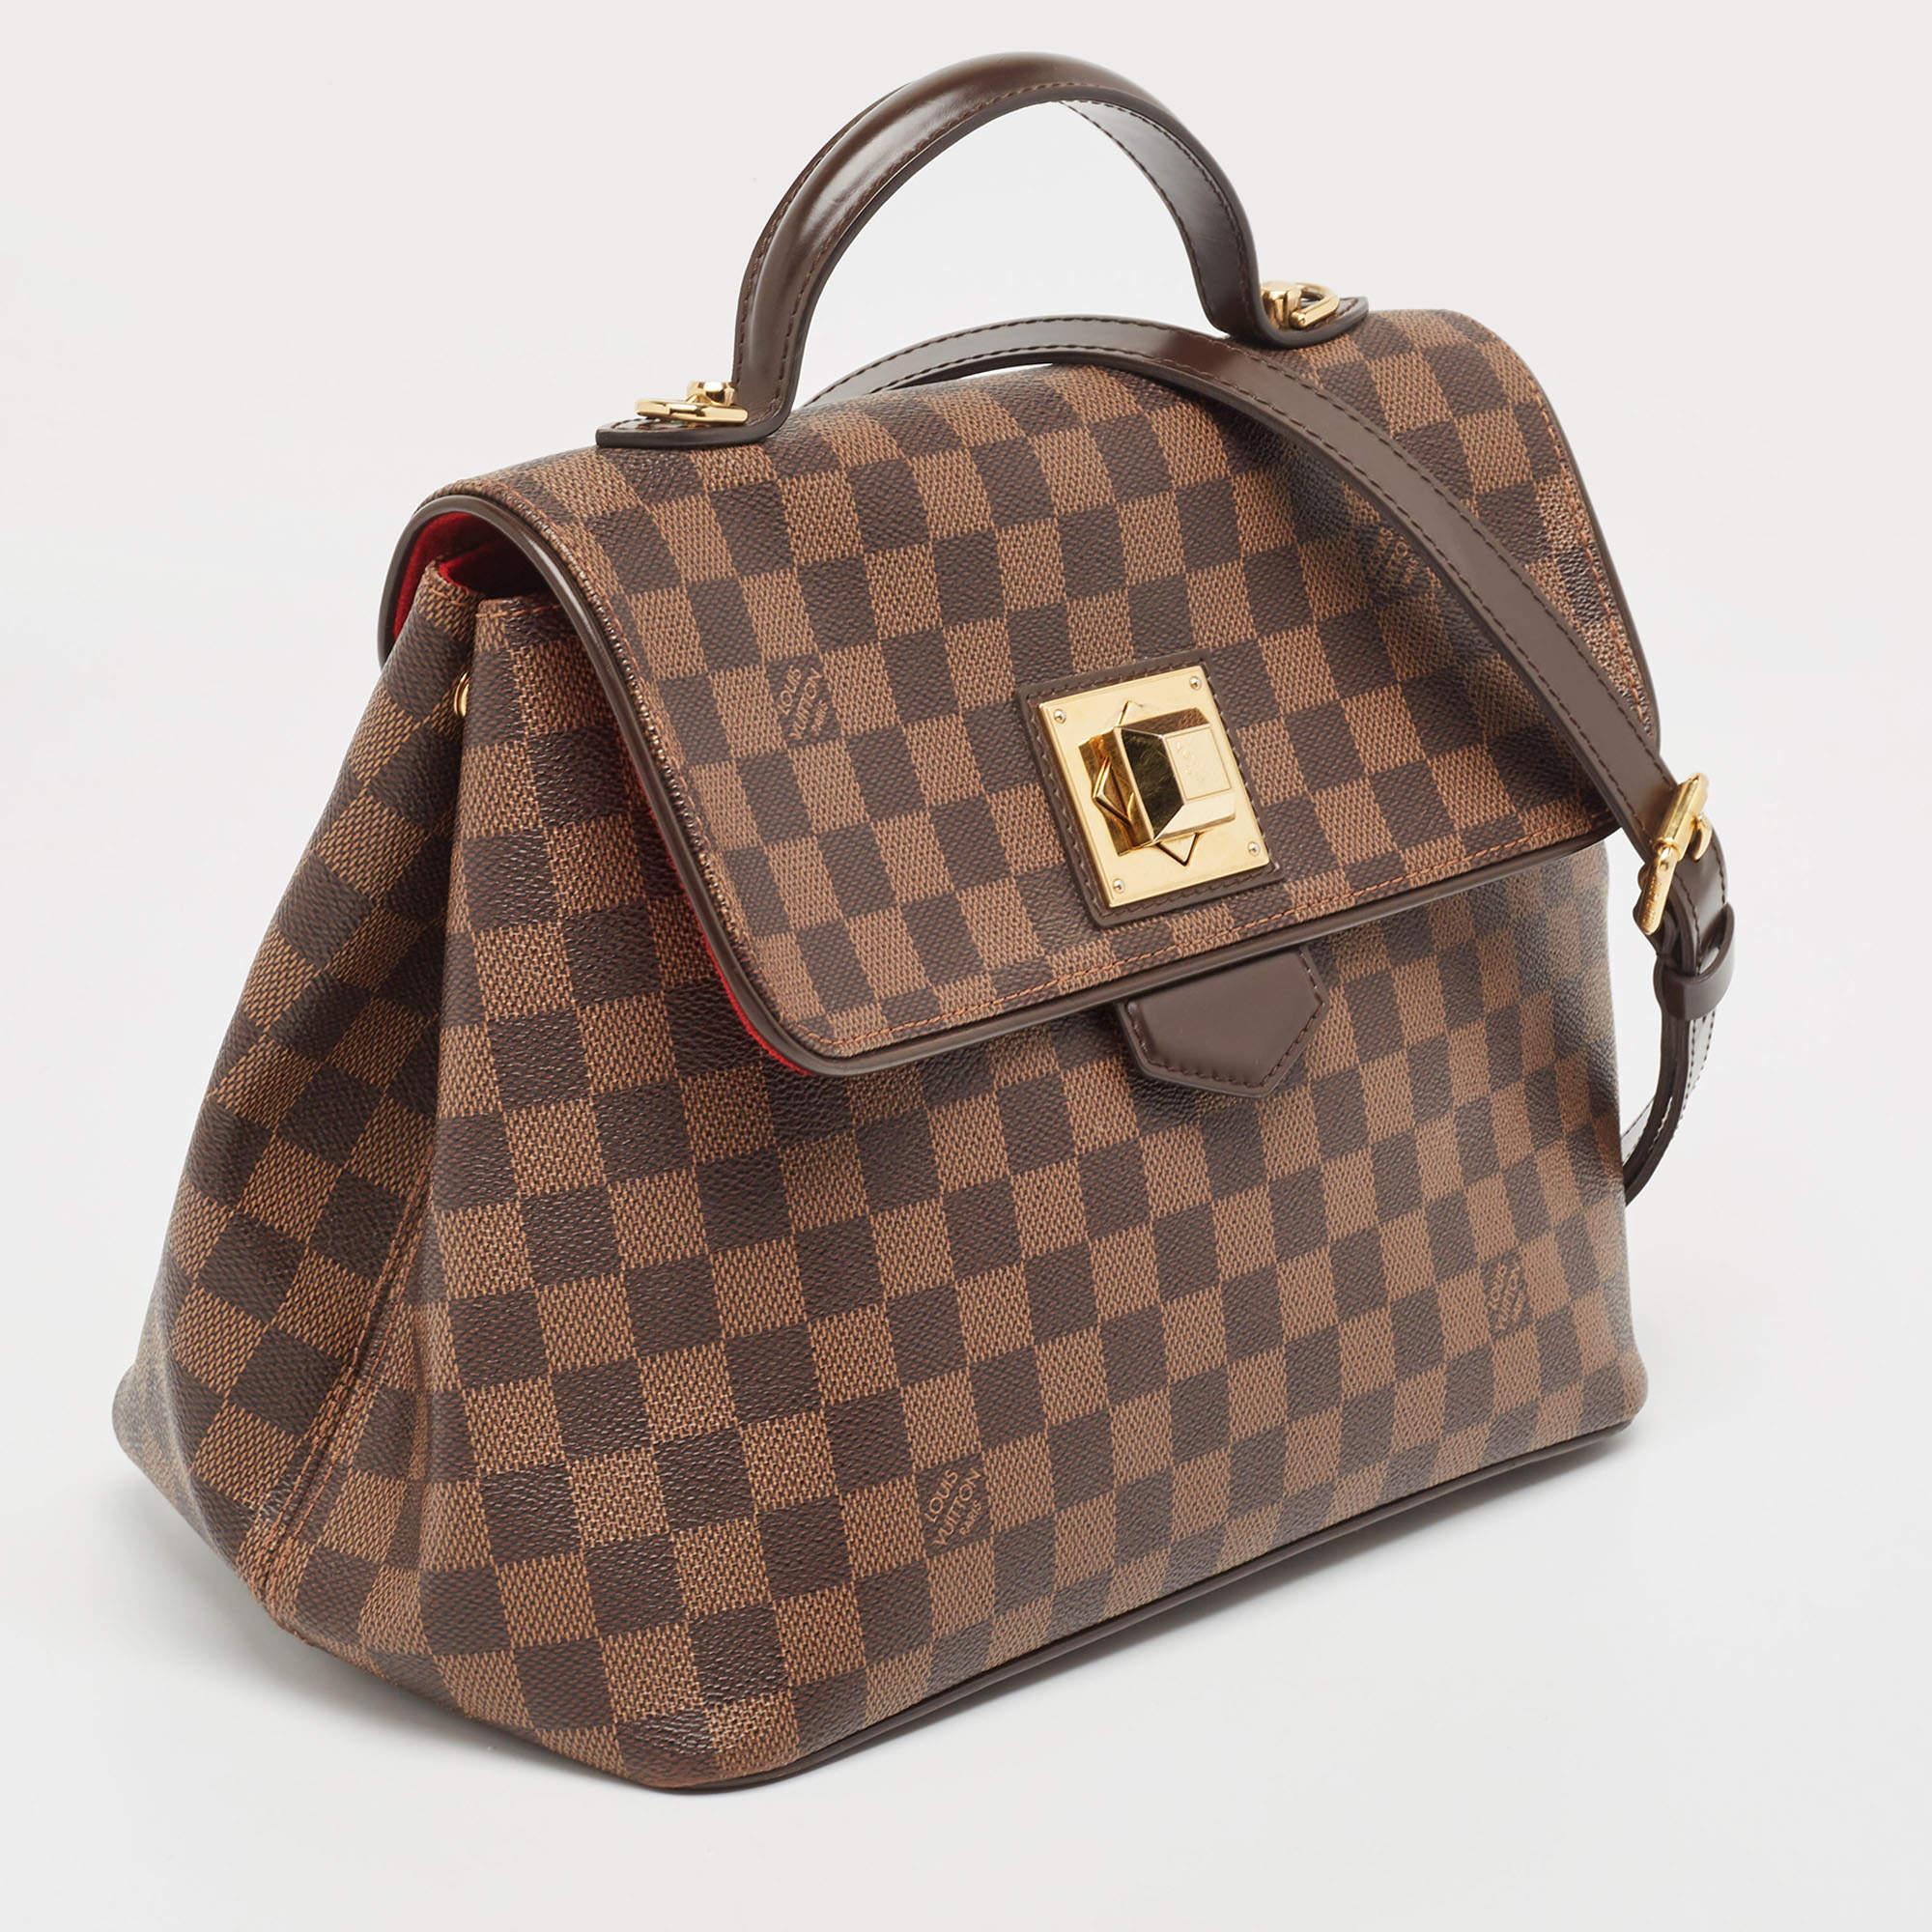 Louis Vuitton Damier Ebene Canvas Bergamo MM Bag For Sale 9